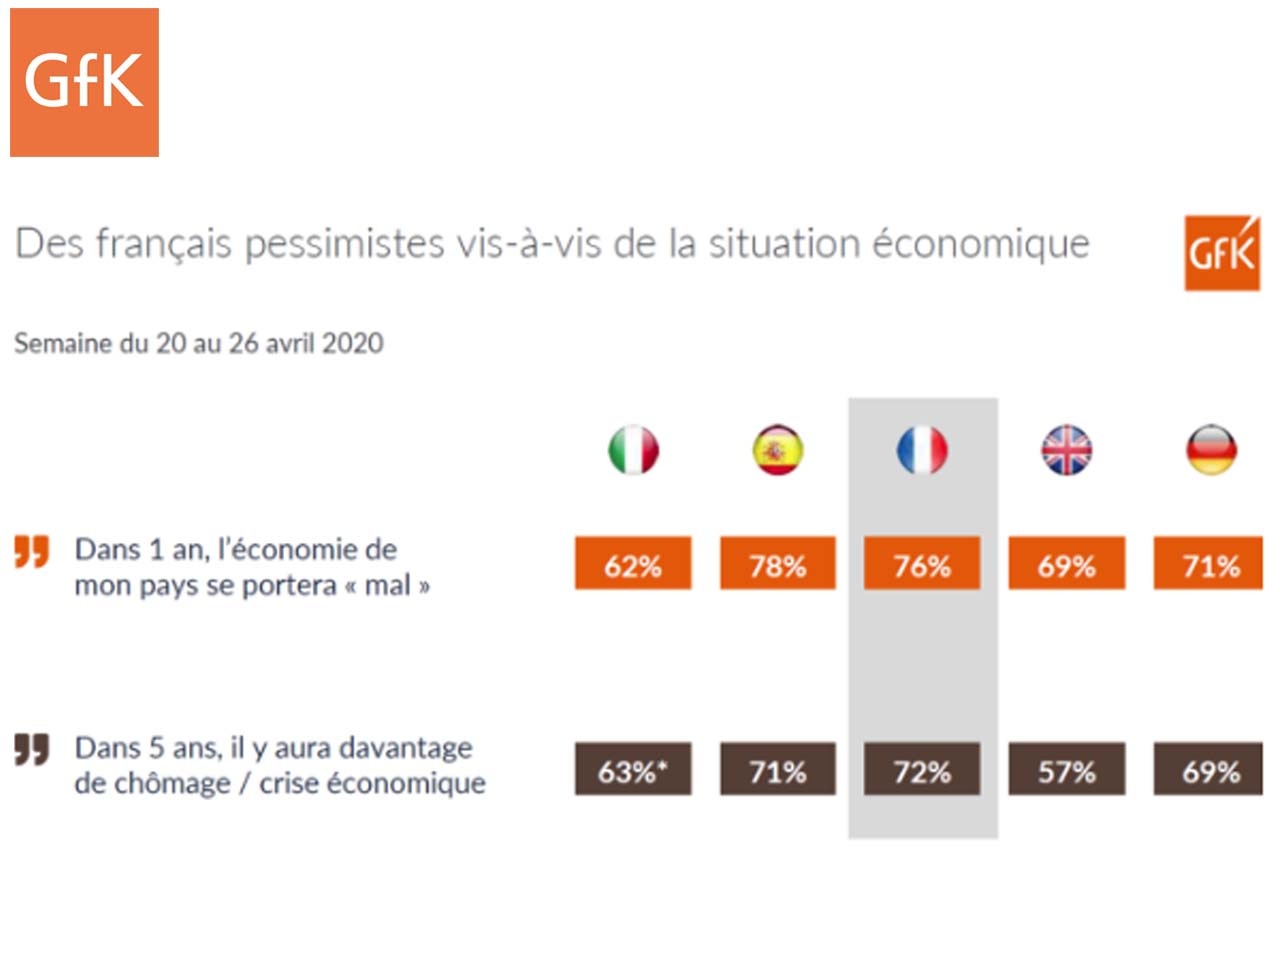 Covid-19: les consommateurs français prudents quant au monde d’après